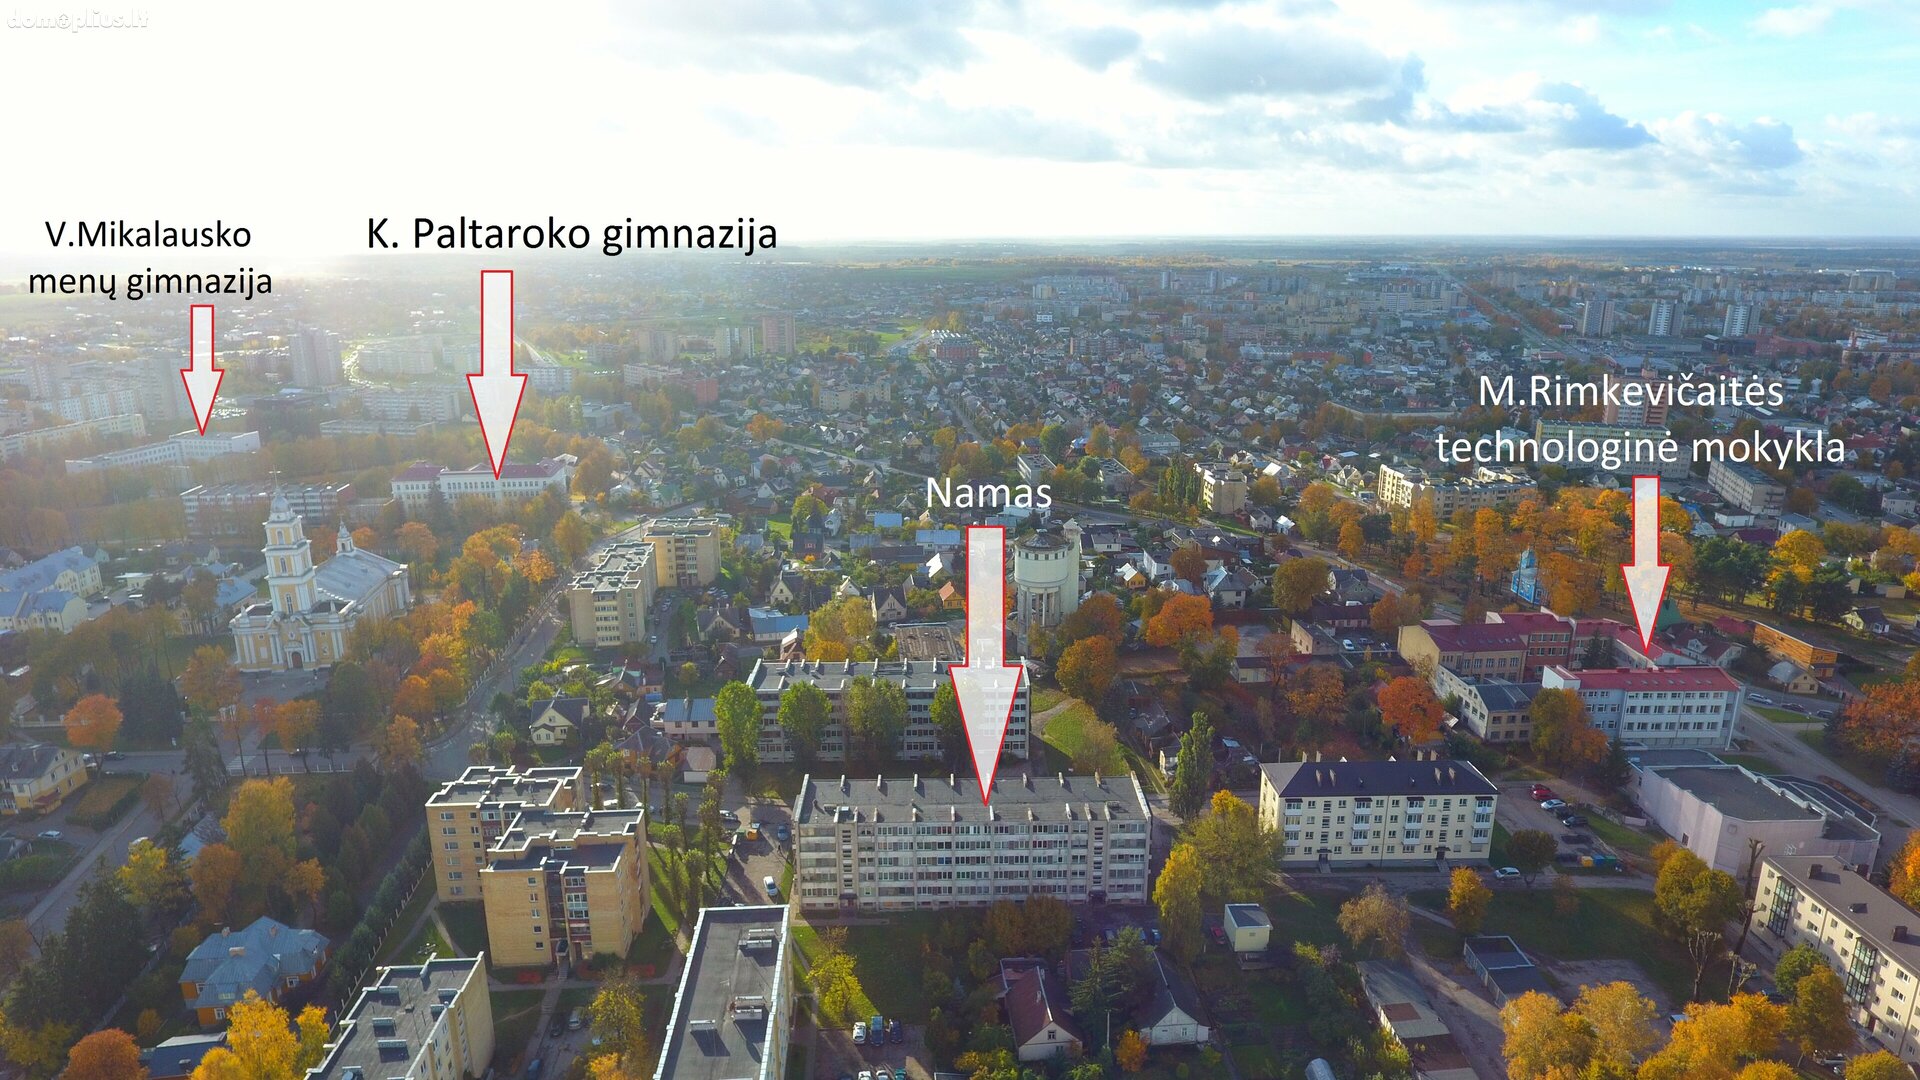 Продается 2 комнатная квартира Panevėžyje, Centre, Aldonos g.